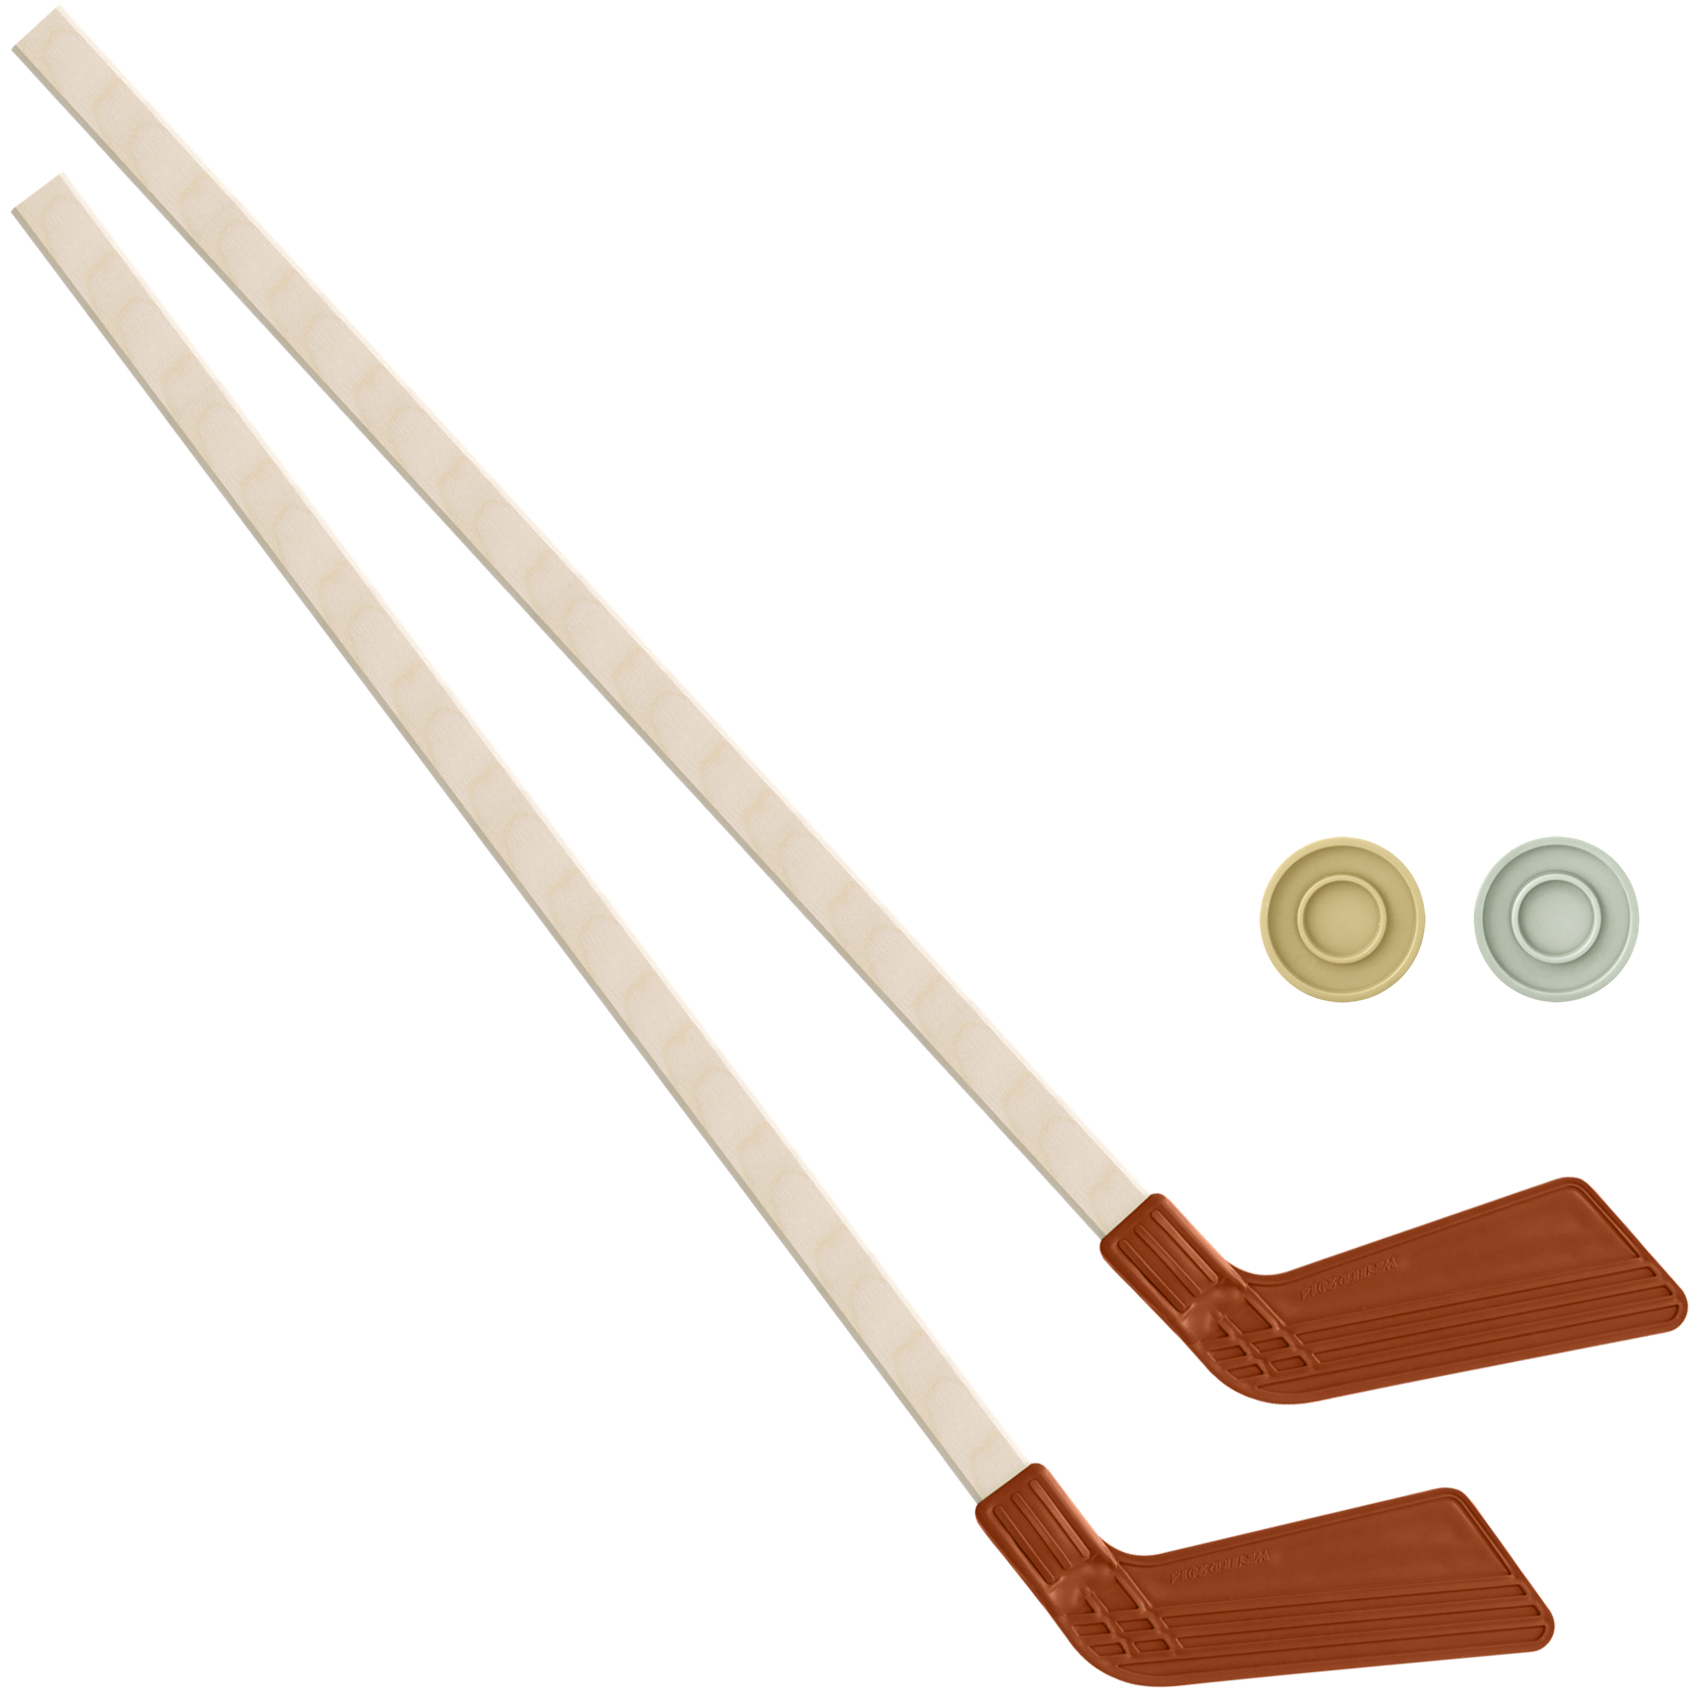 Детский хоккейный набор Задира-плюс клюшка хоккейная детская 80 см (красная) 2шт + 2 шайбы